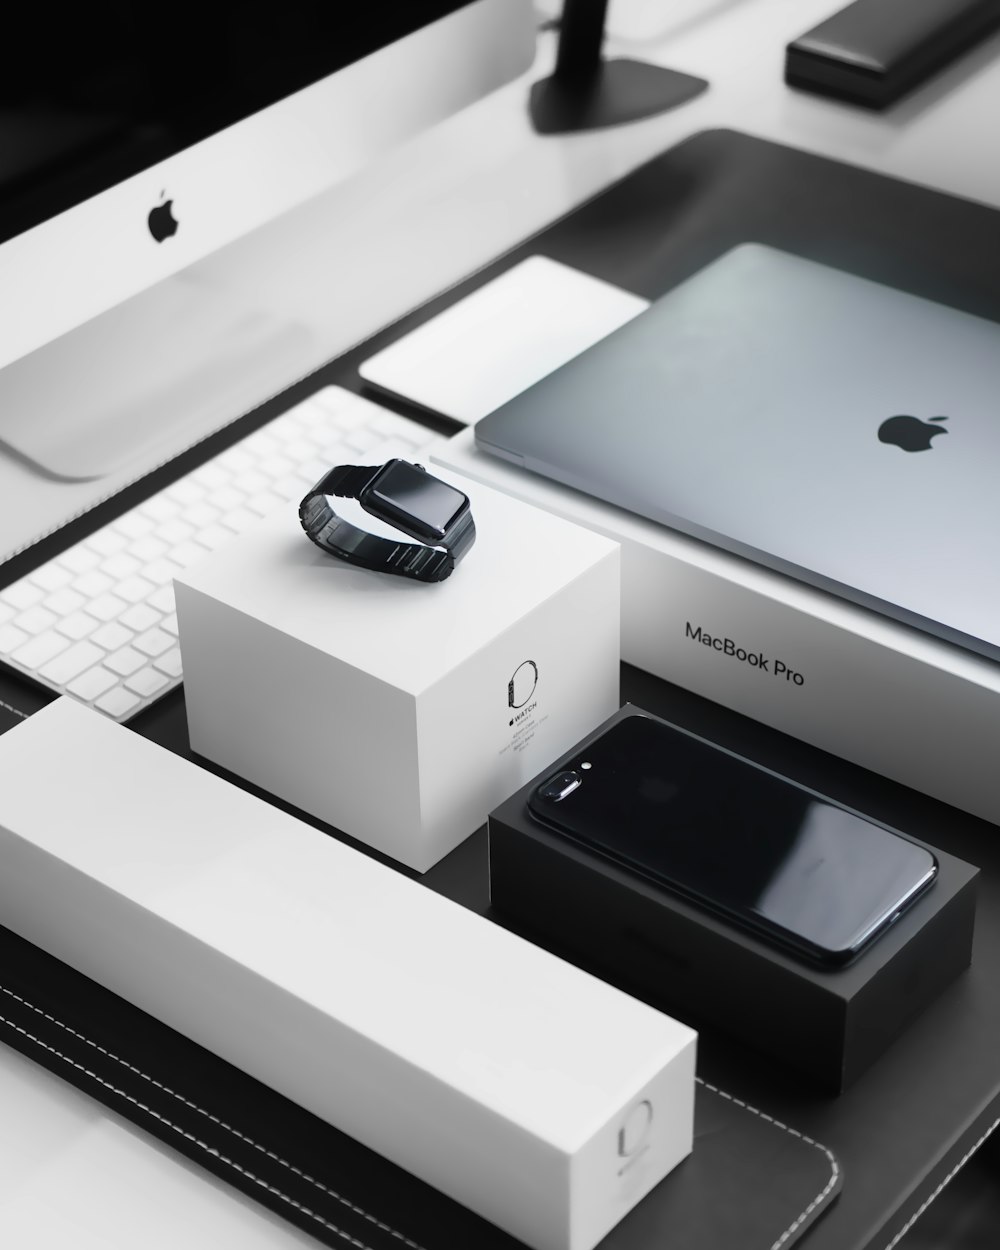 étui noir sidéral Apple Watch, MacBook Pro argenté, iPhone 7 Plus noir de jais et iMac argenté avec boîtes correspondantes